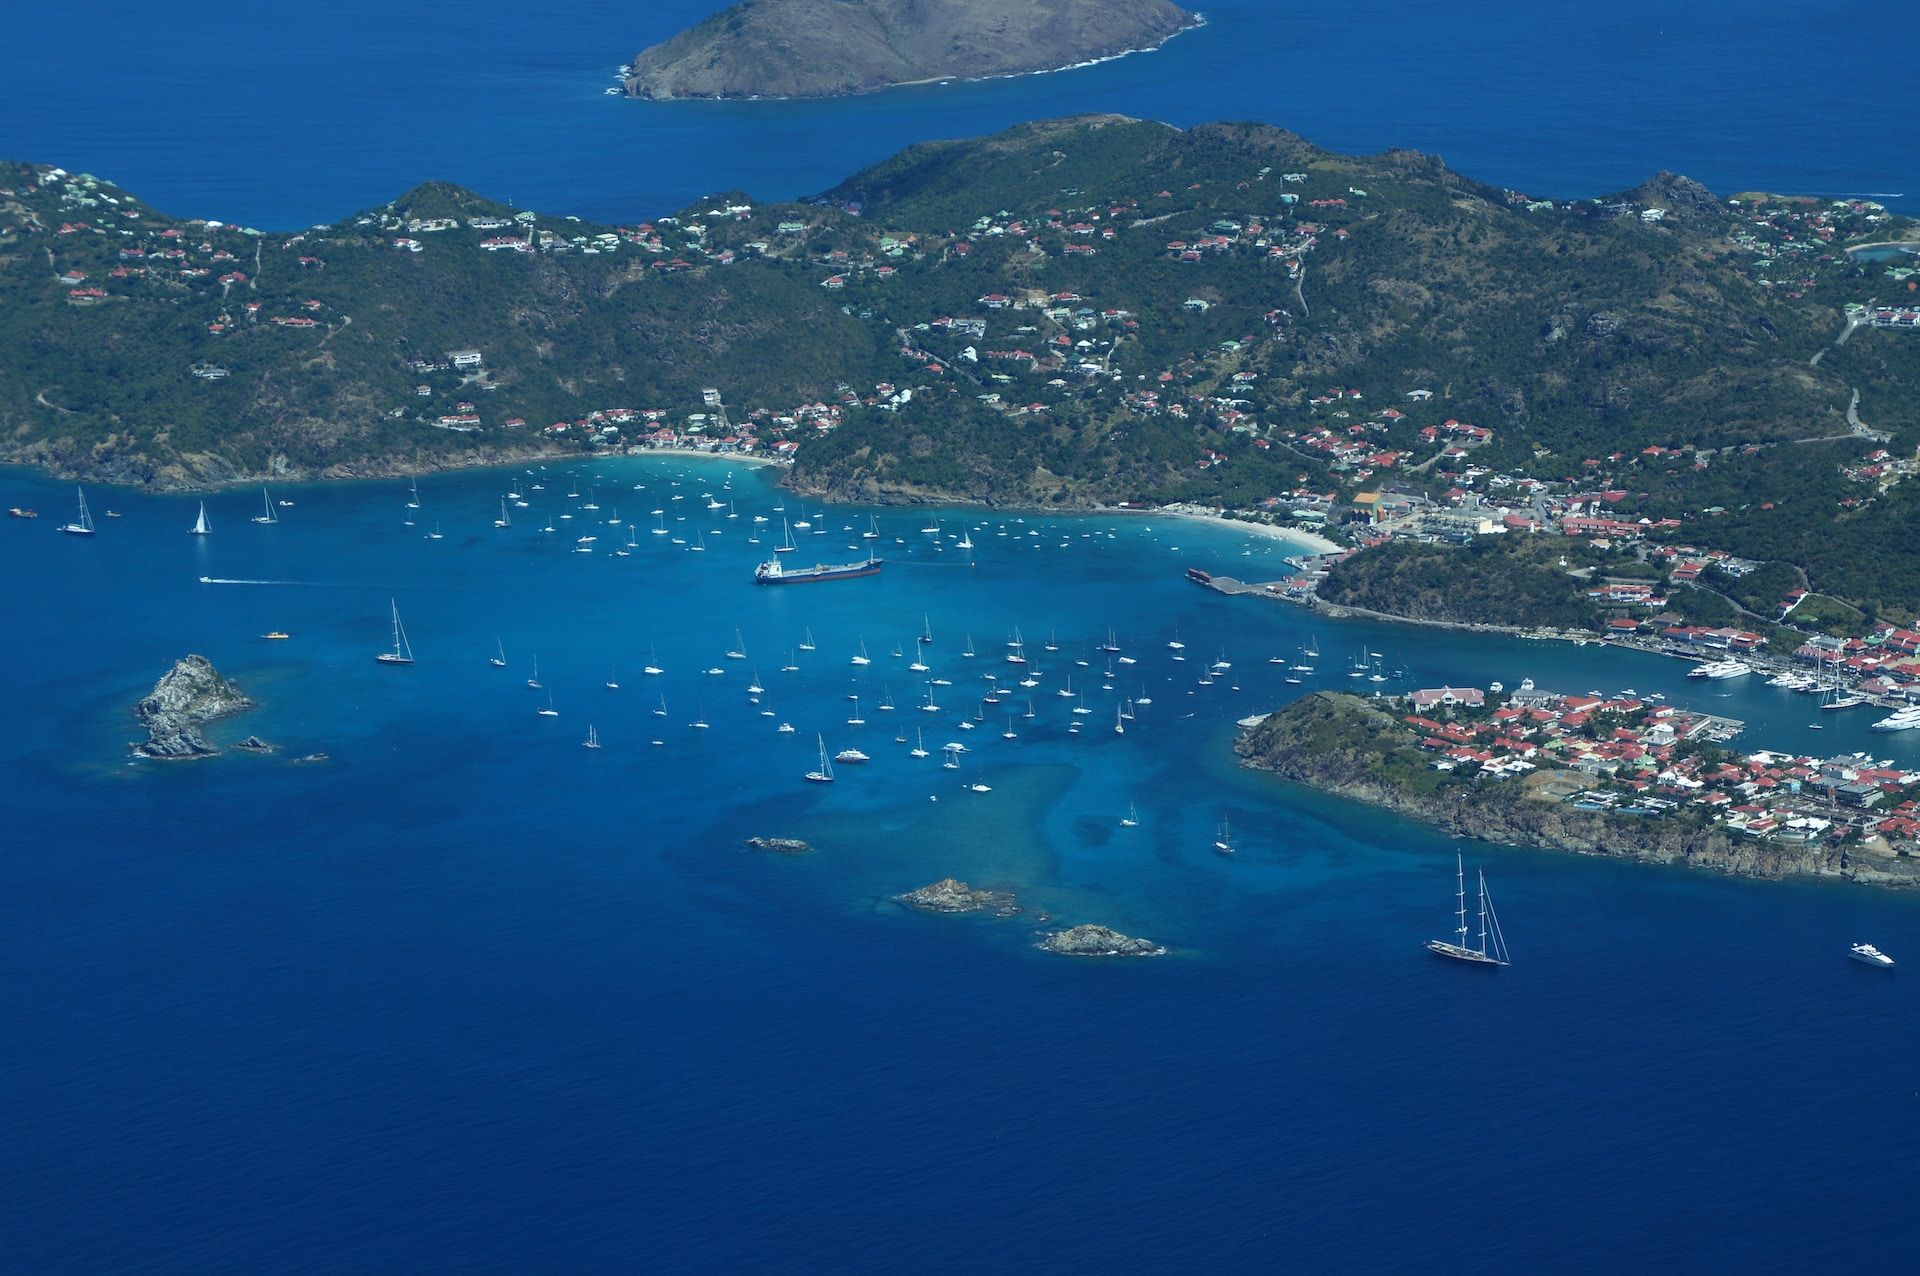     Saint Kitts, Saint Kitts and Nevis